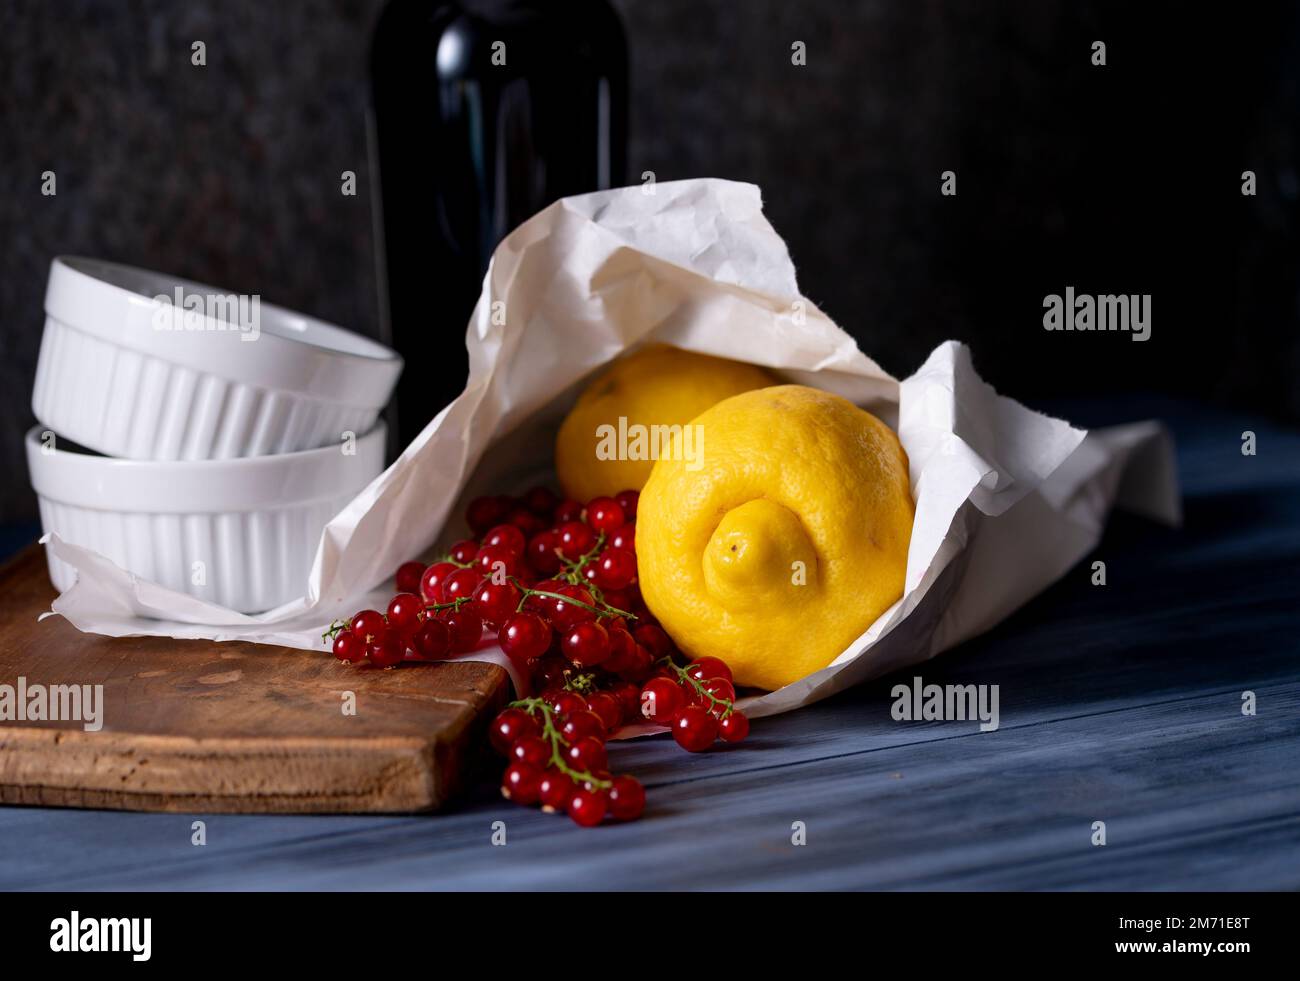 Frisch gekaufte Zitronen und rote Johannisbeeren in Papiertüte und weiße Gratiniergerichte Stockfoto